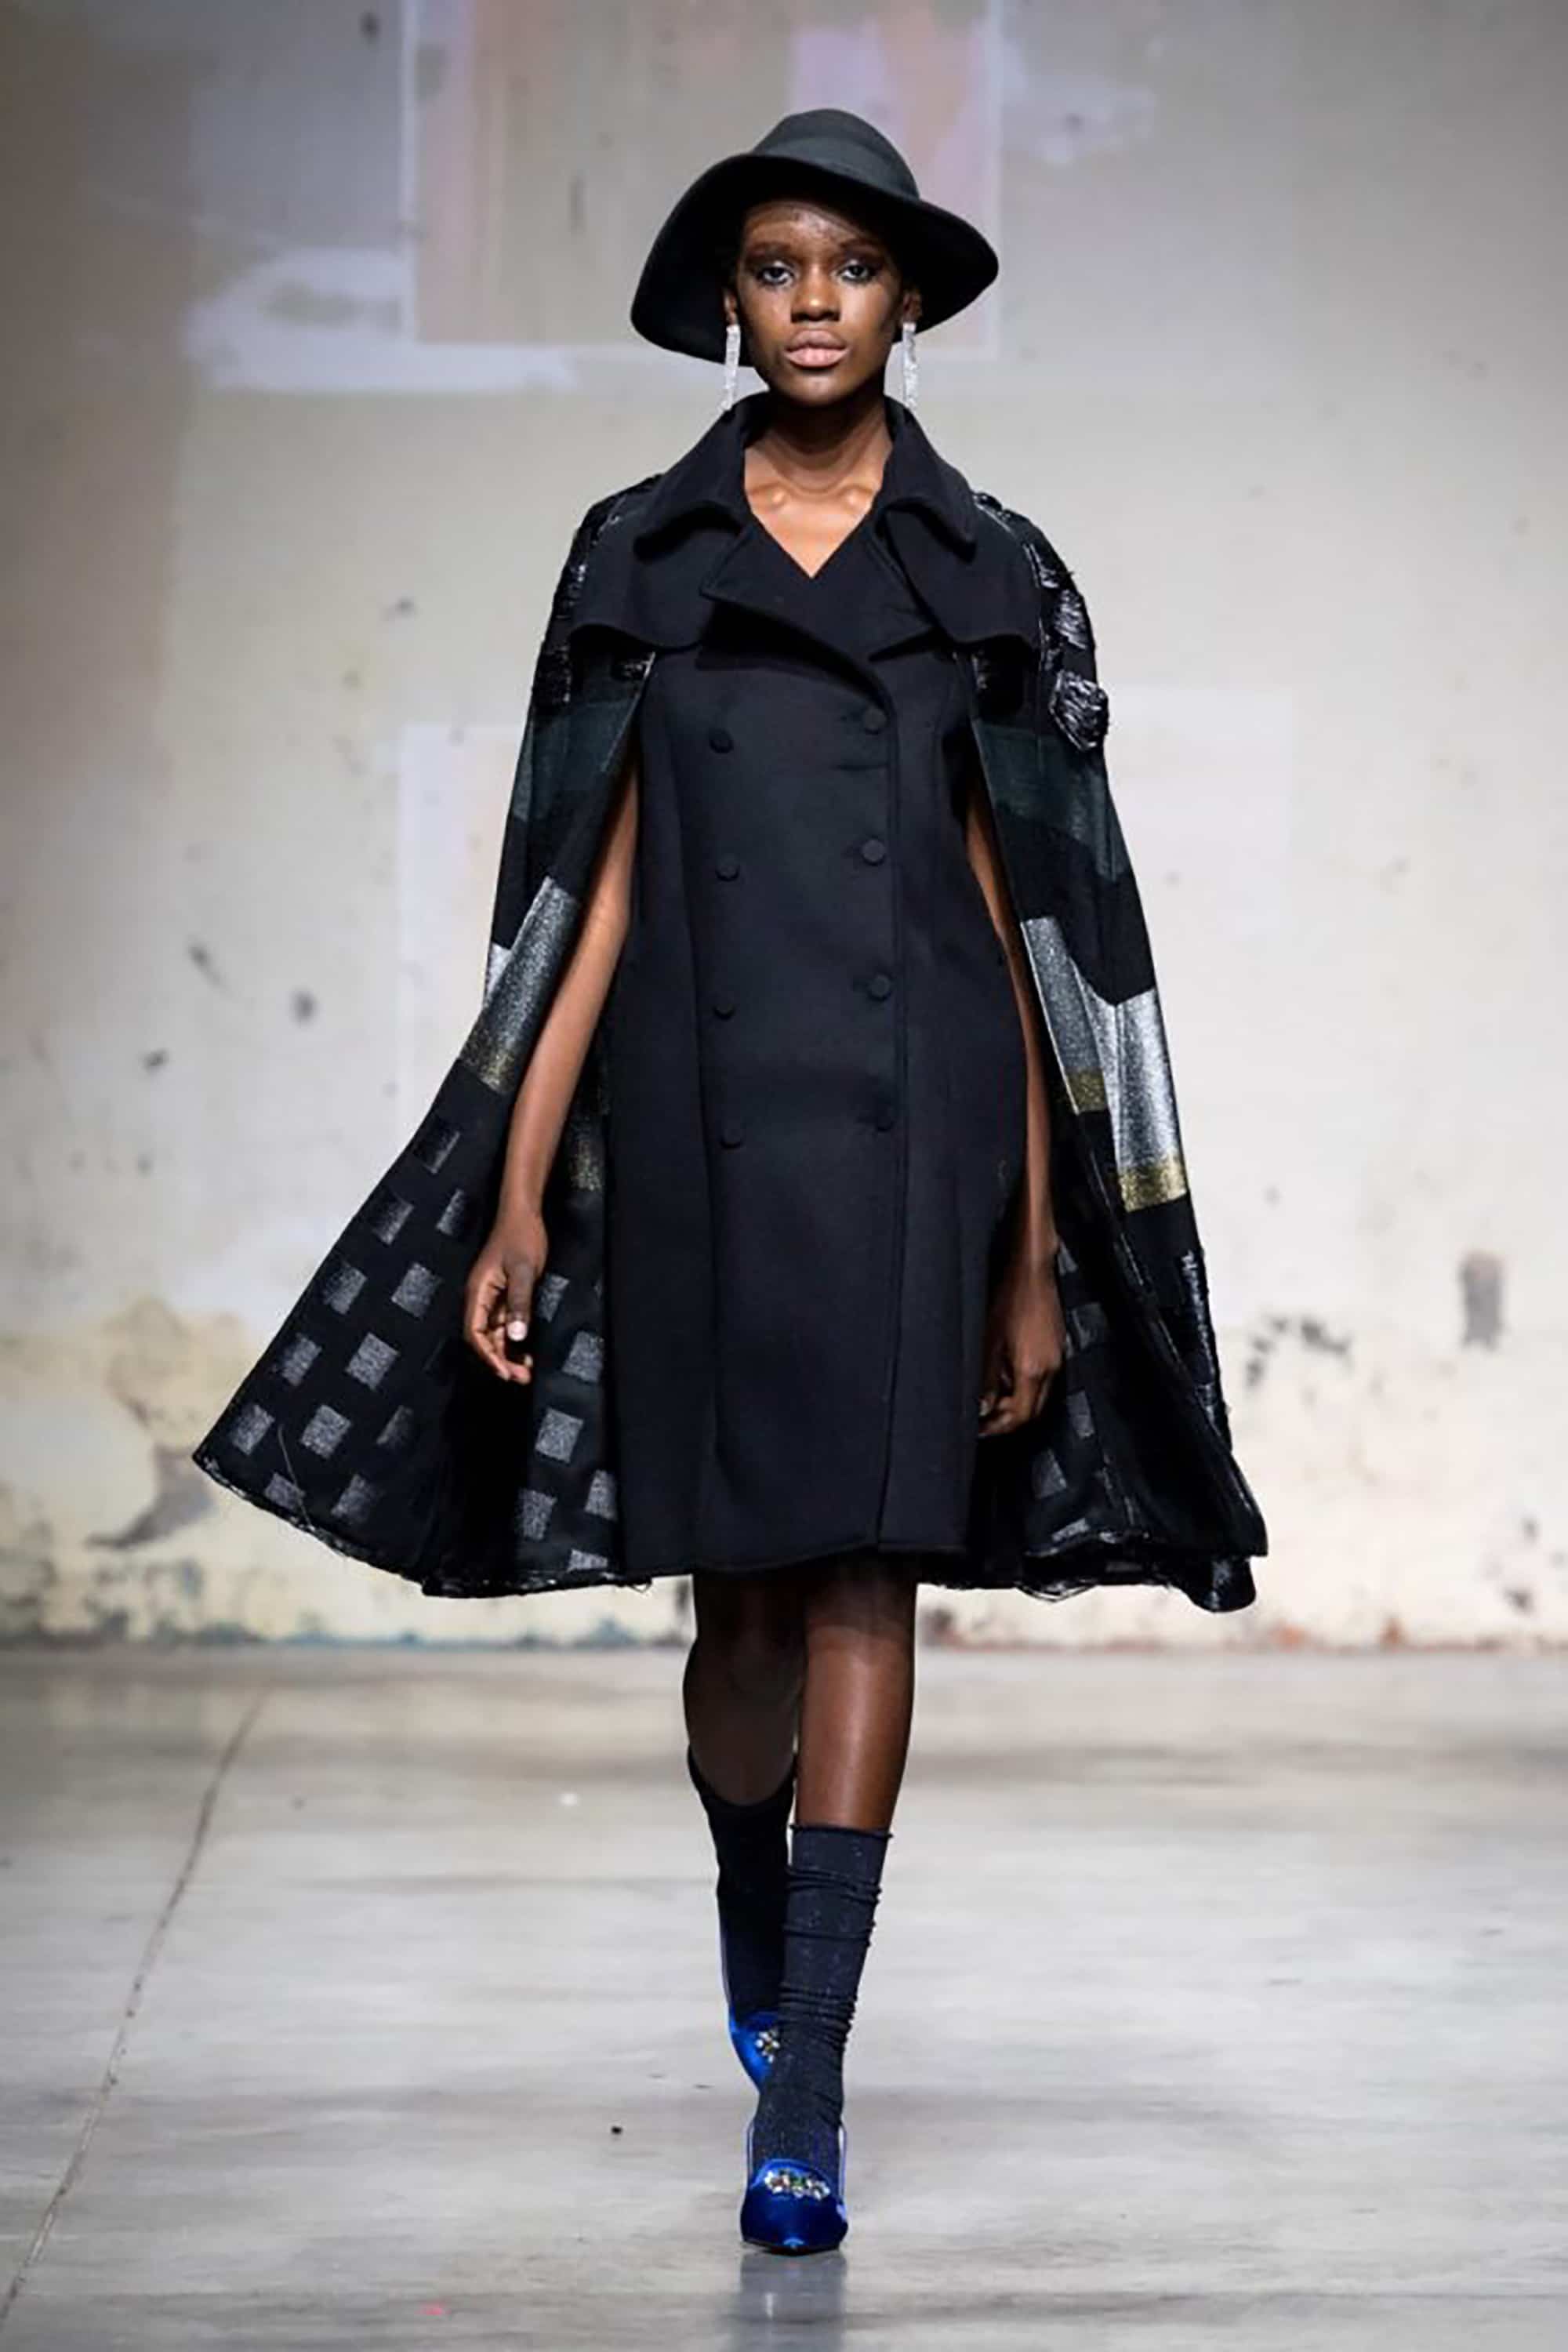 Altaroma 2020 donna sfila con abito corto nero, giacca e cappello presente Erboso abbigliamento multibrand San Cesareo Roma